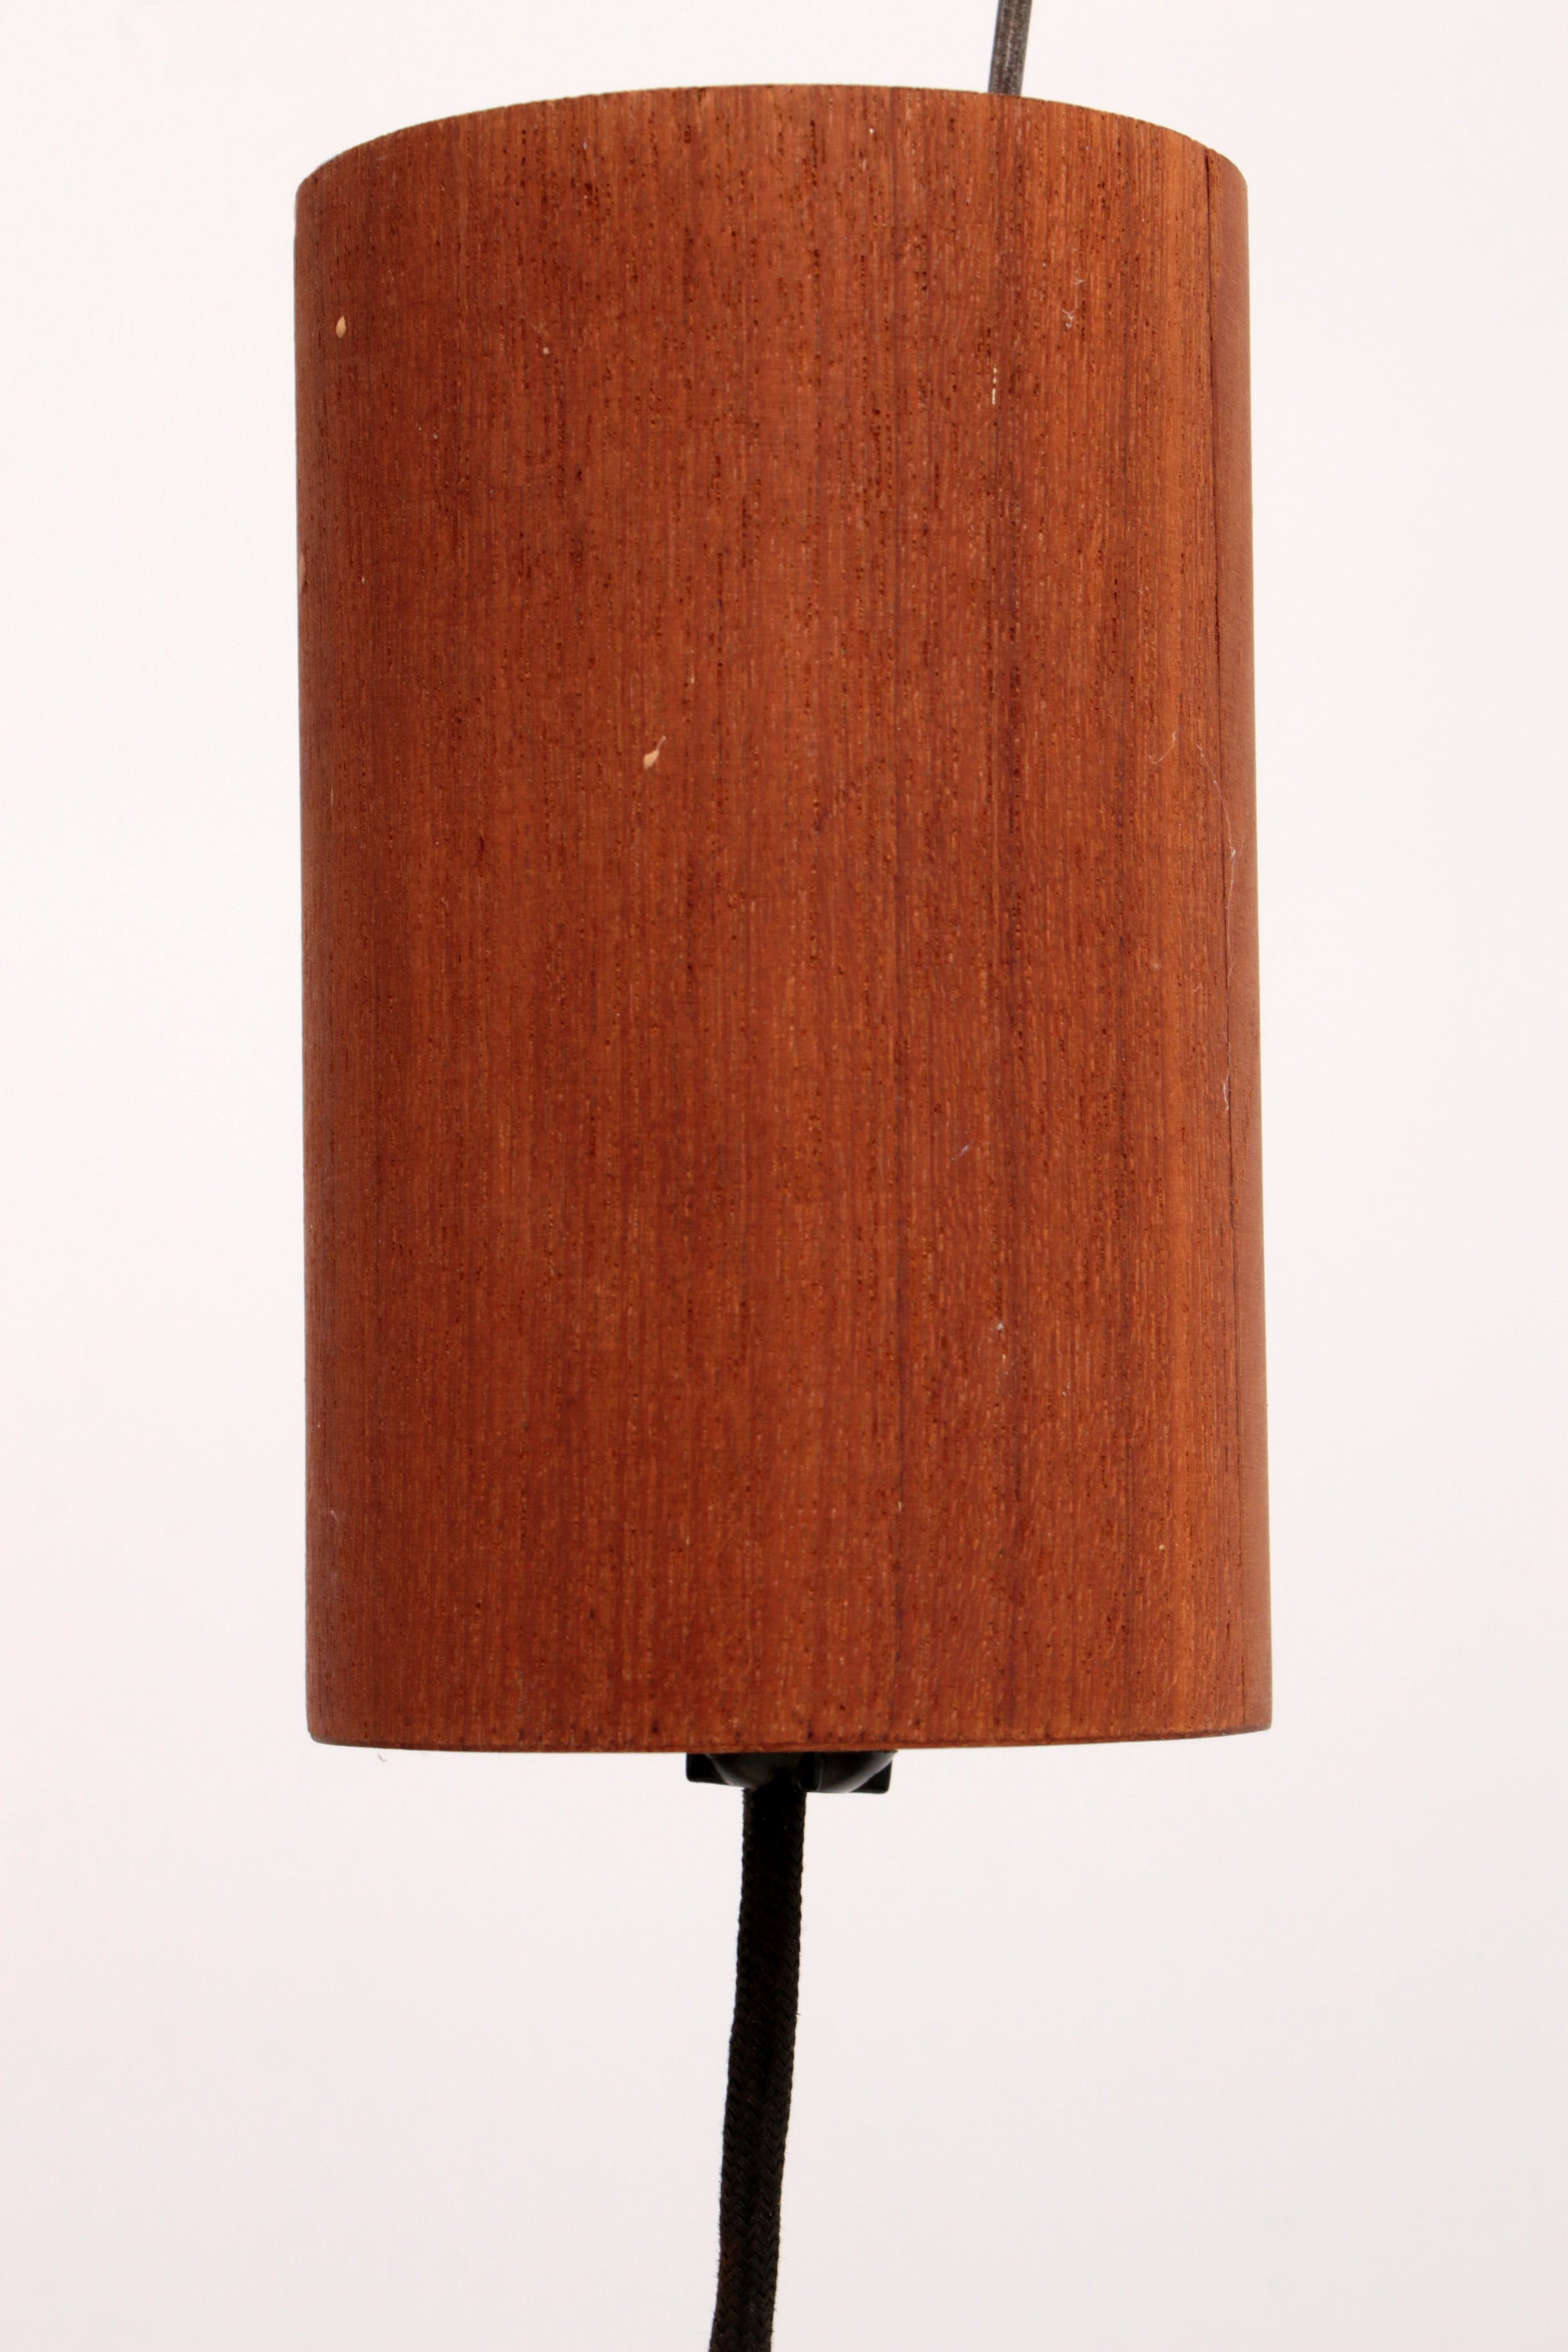 Vintage Temde Hanglamp met Teak en Raffia jaren 60 Duitsland.